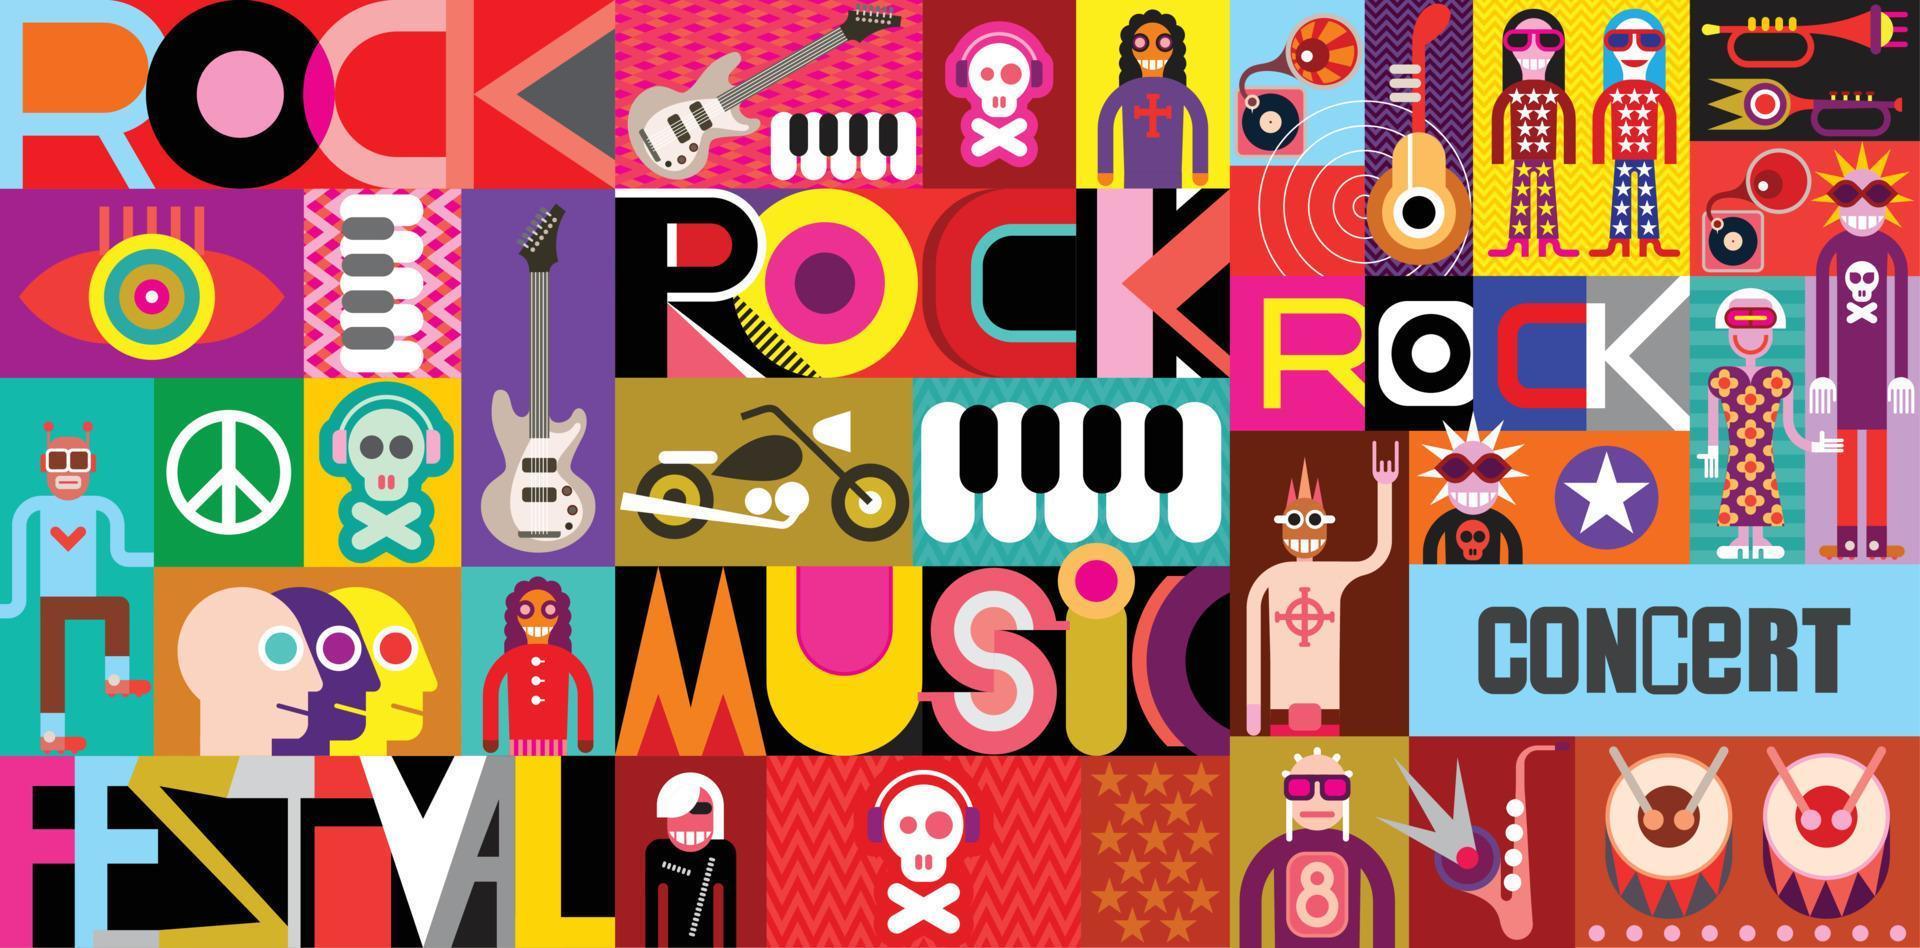 Rock Concert Poster vector